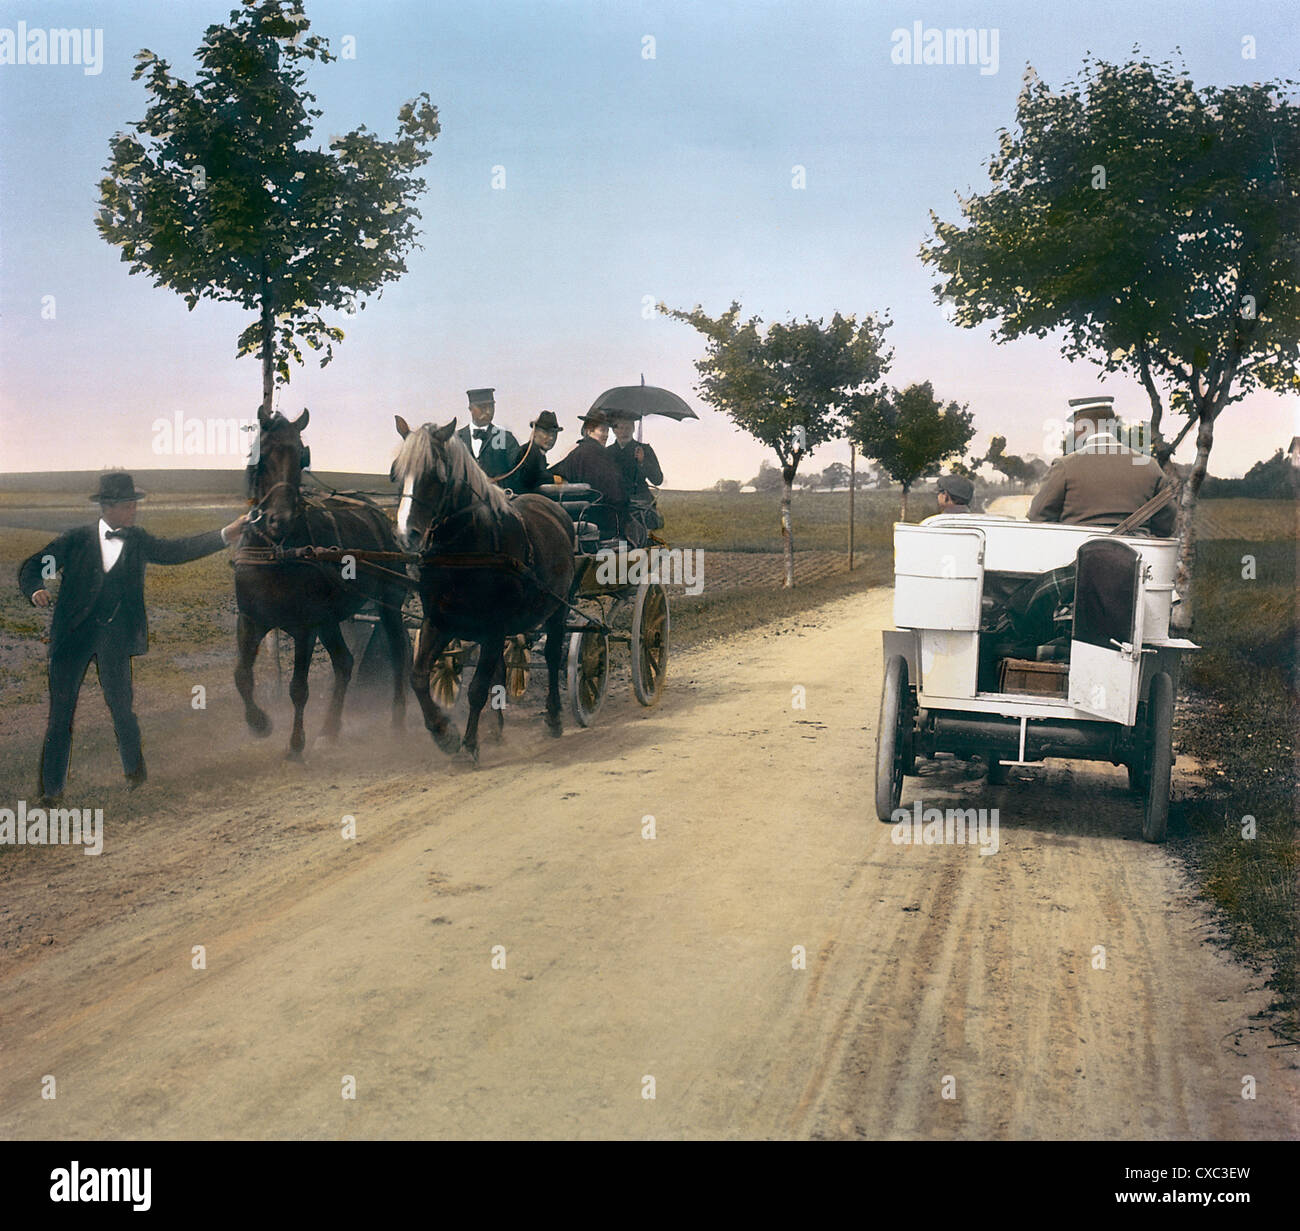 Photo colorisée des passagers dans un chariot tiré par un cheval qui a l'air choqué lorsqu'ils passent par une voiture sur une route de terre au sud de Copenhague, Danemark, 1902. Il y avait peu de voitures au Danemark au début des années 1900. (Photo de Burton Holmes) Banque D'Images